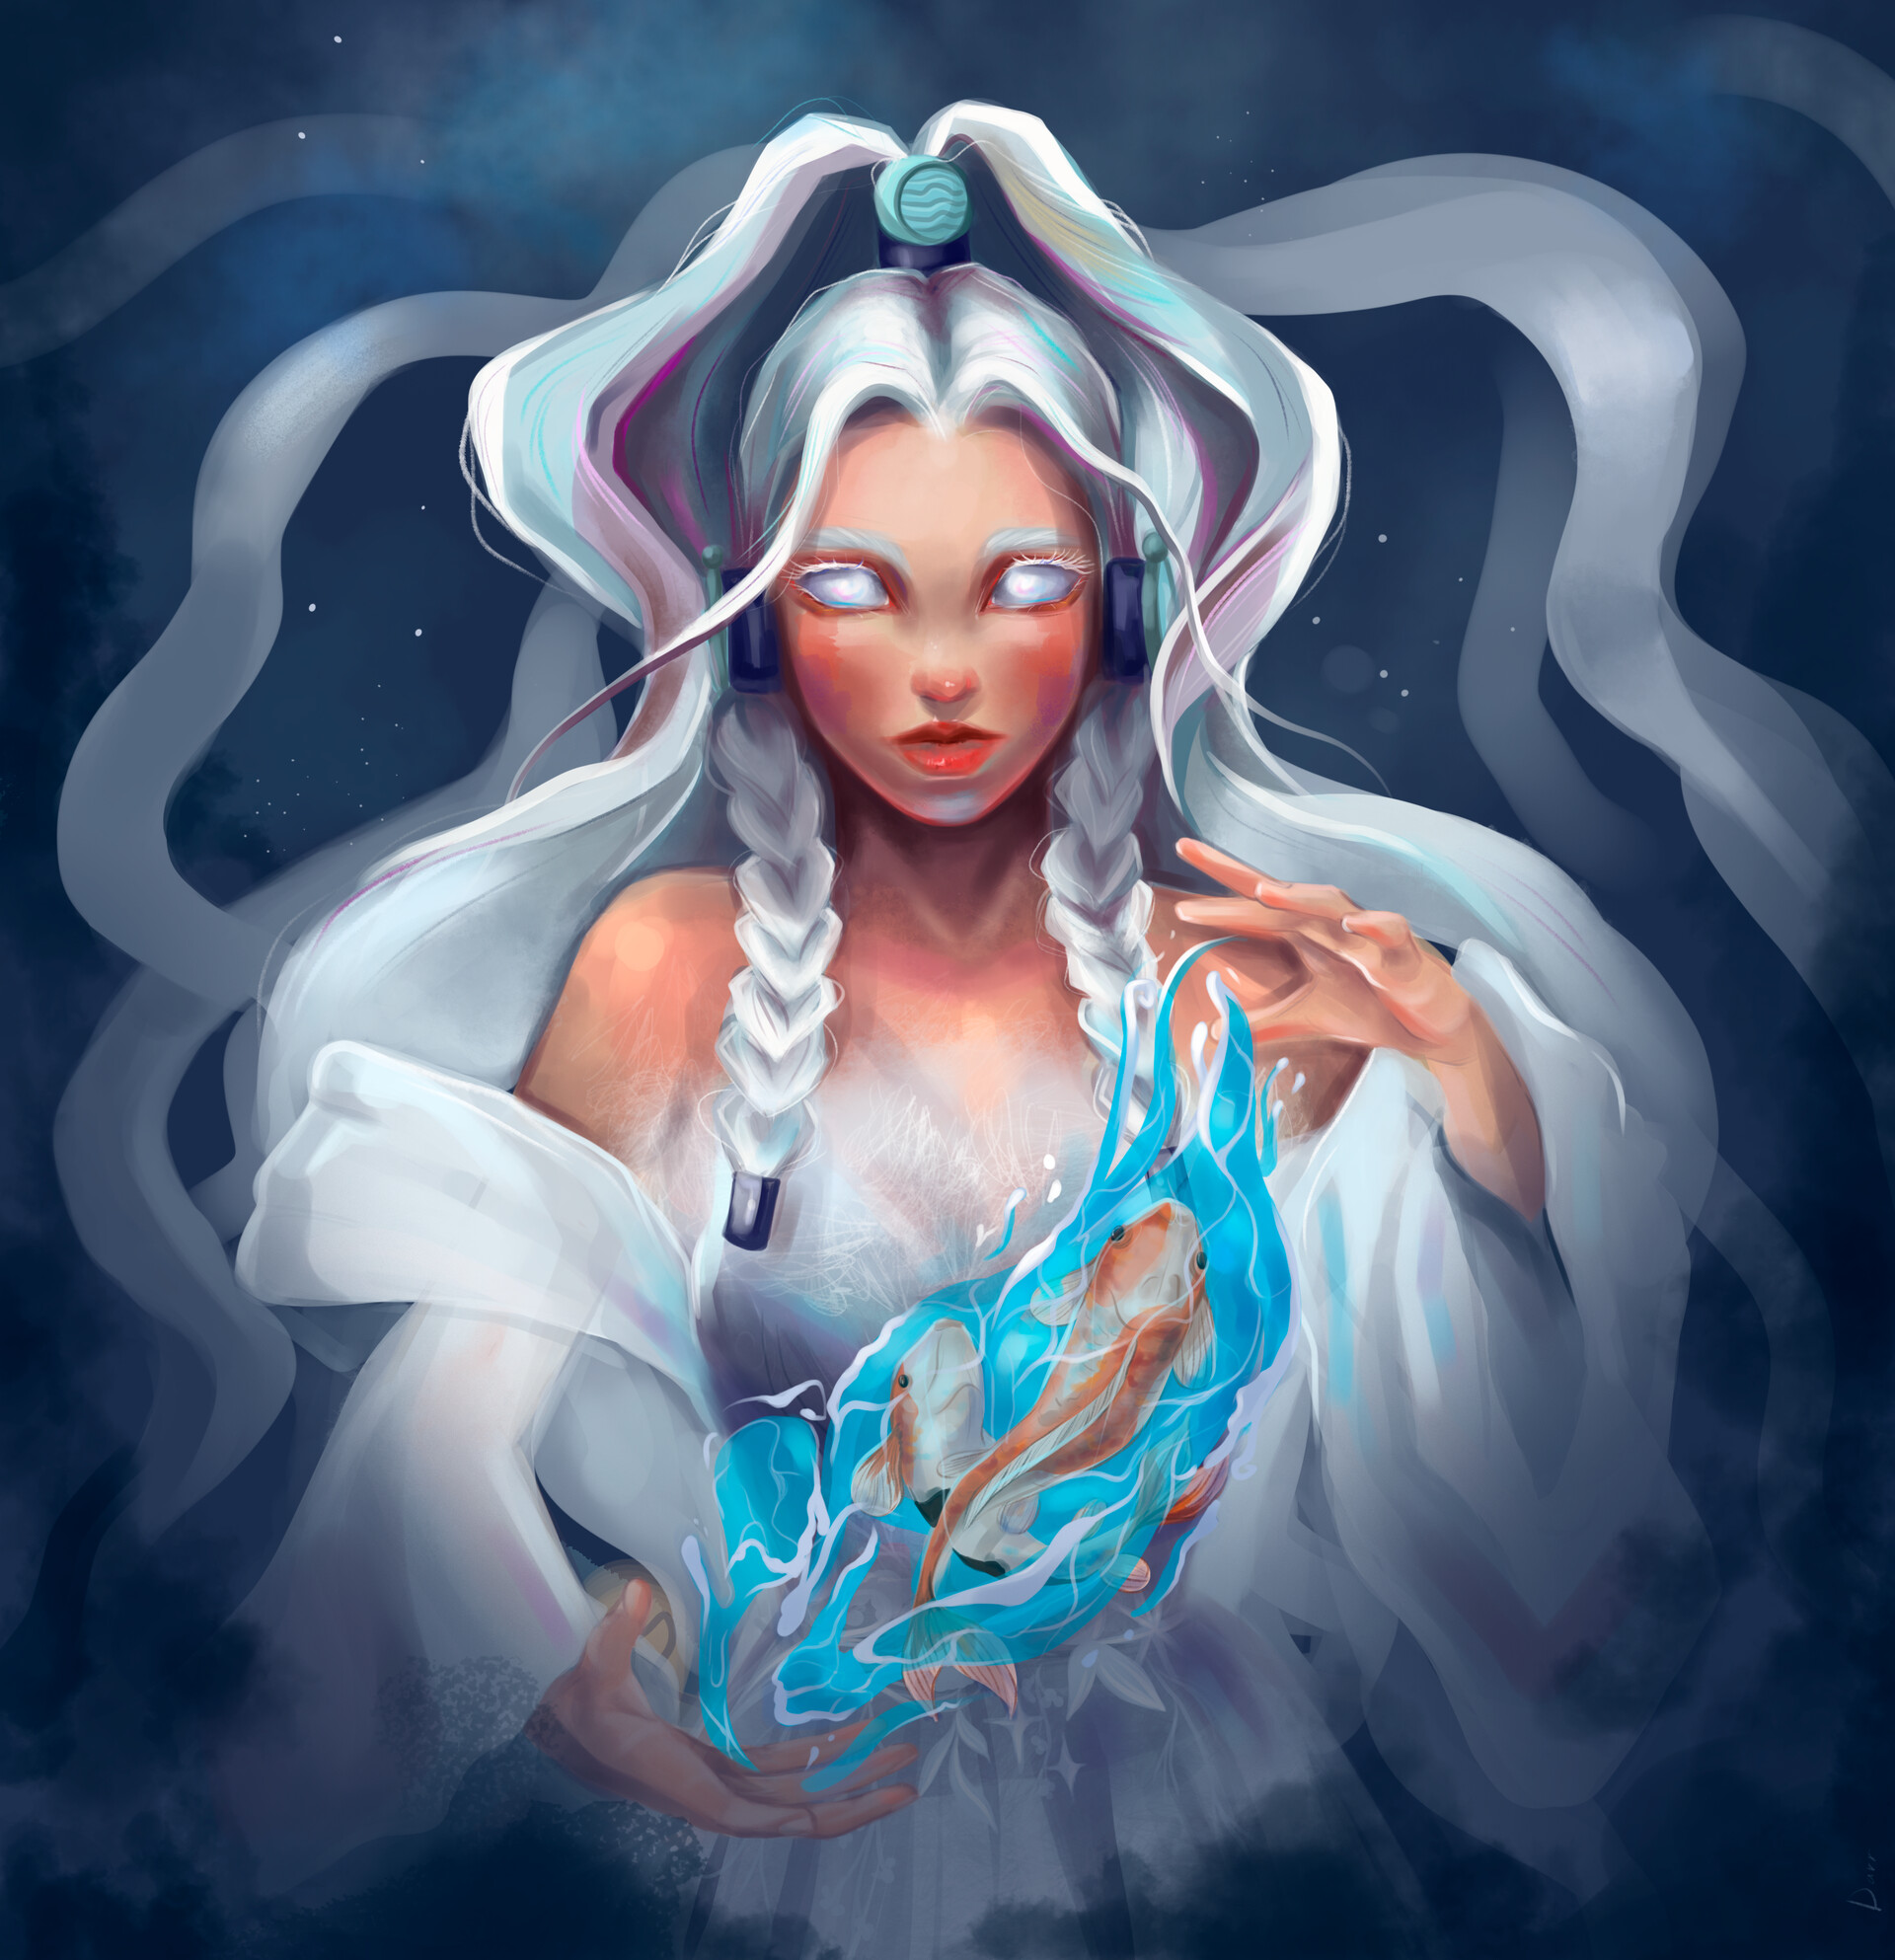 Công chúa Nguyệt, nữ thần ánh sáng, là một trong những nhân vật đẹp đẽ nhất của Avatar. Với yếu tố truyền thống pha lẫn thần thoại, hình ảnh của cô công chúa đang được các fan hâm mộ Avatar yêu thích và cùng mong đợi thêm nhiều chi tiết về cô ấy.